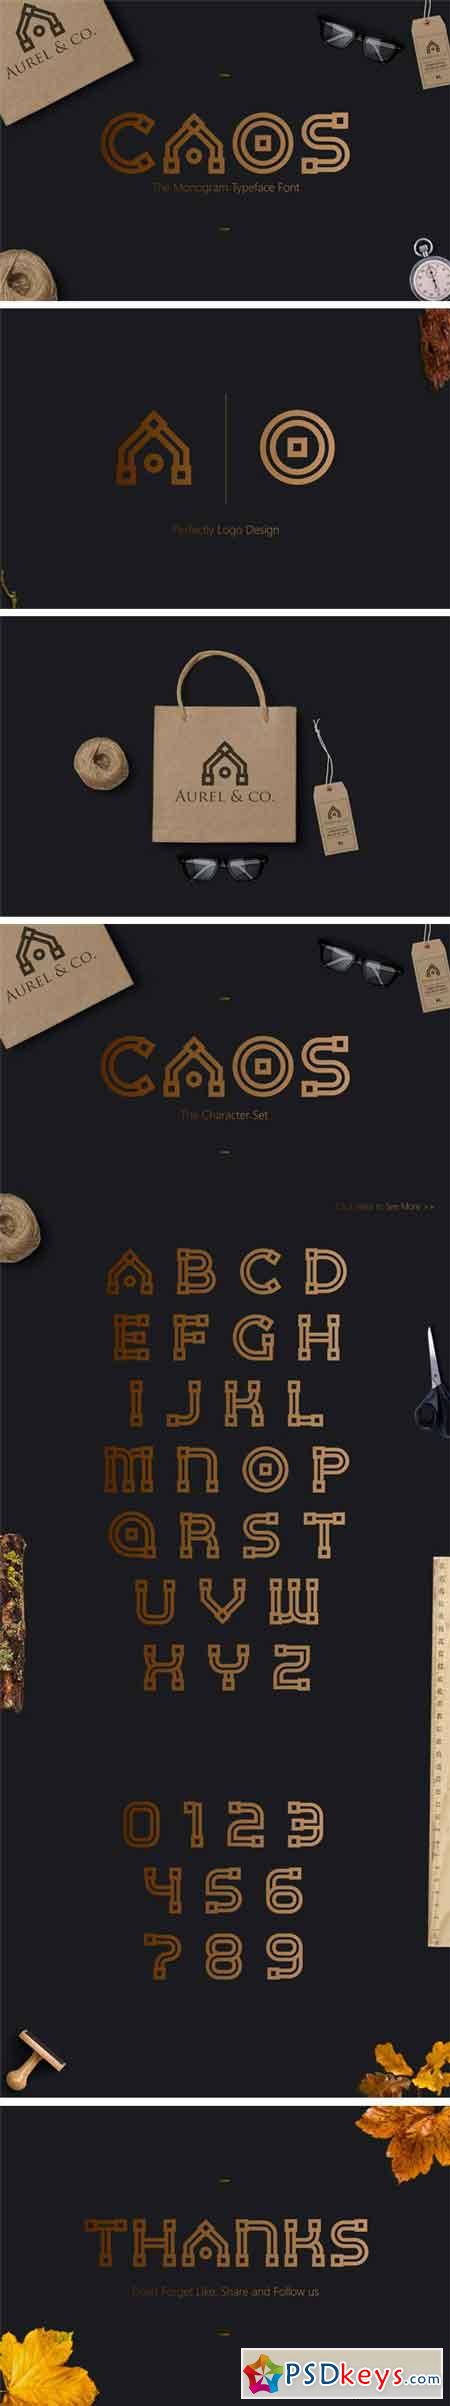 CAOS The Logo Typeface 1758049